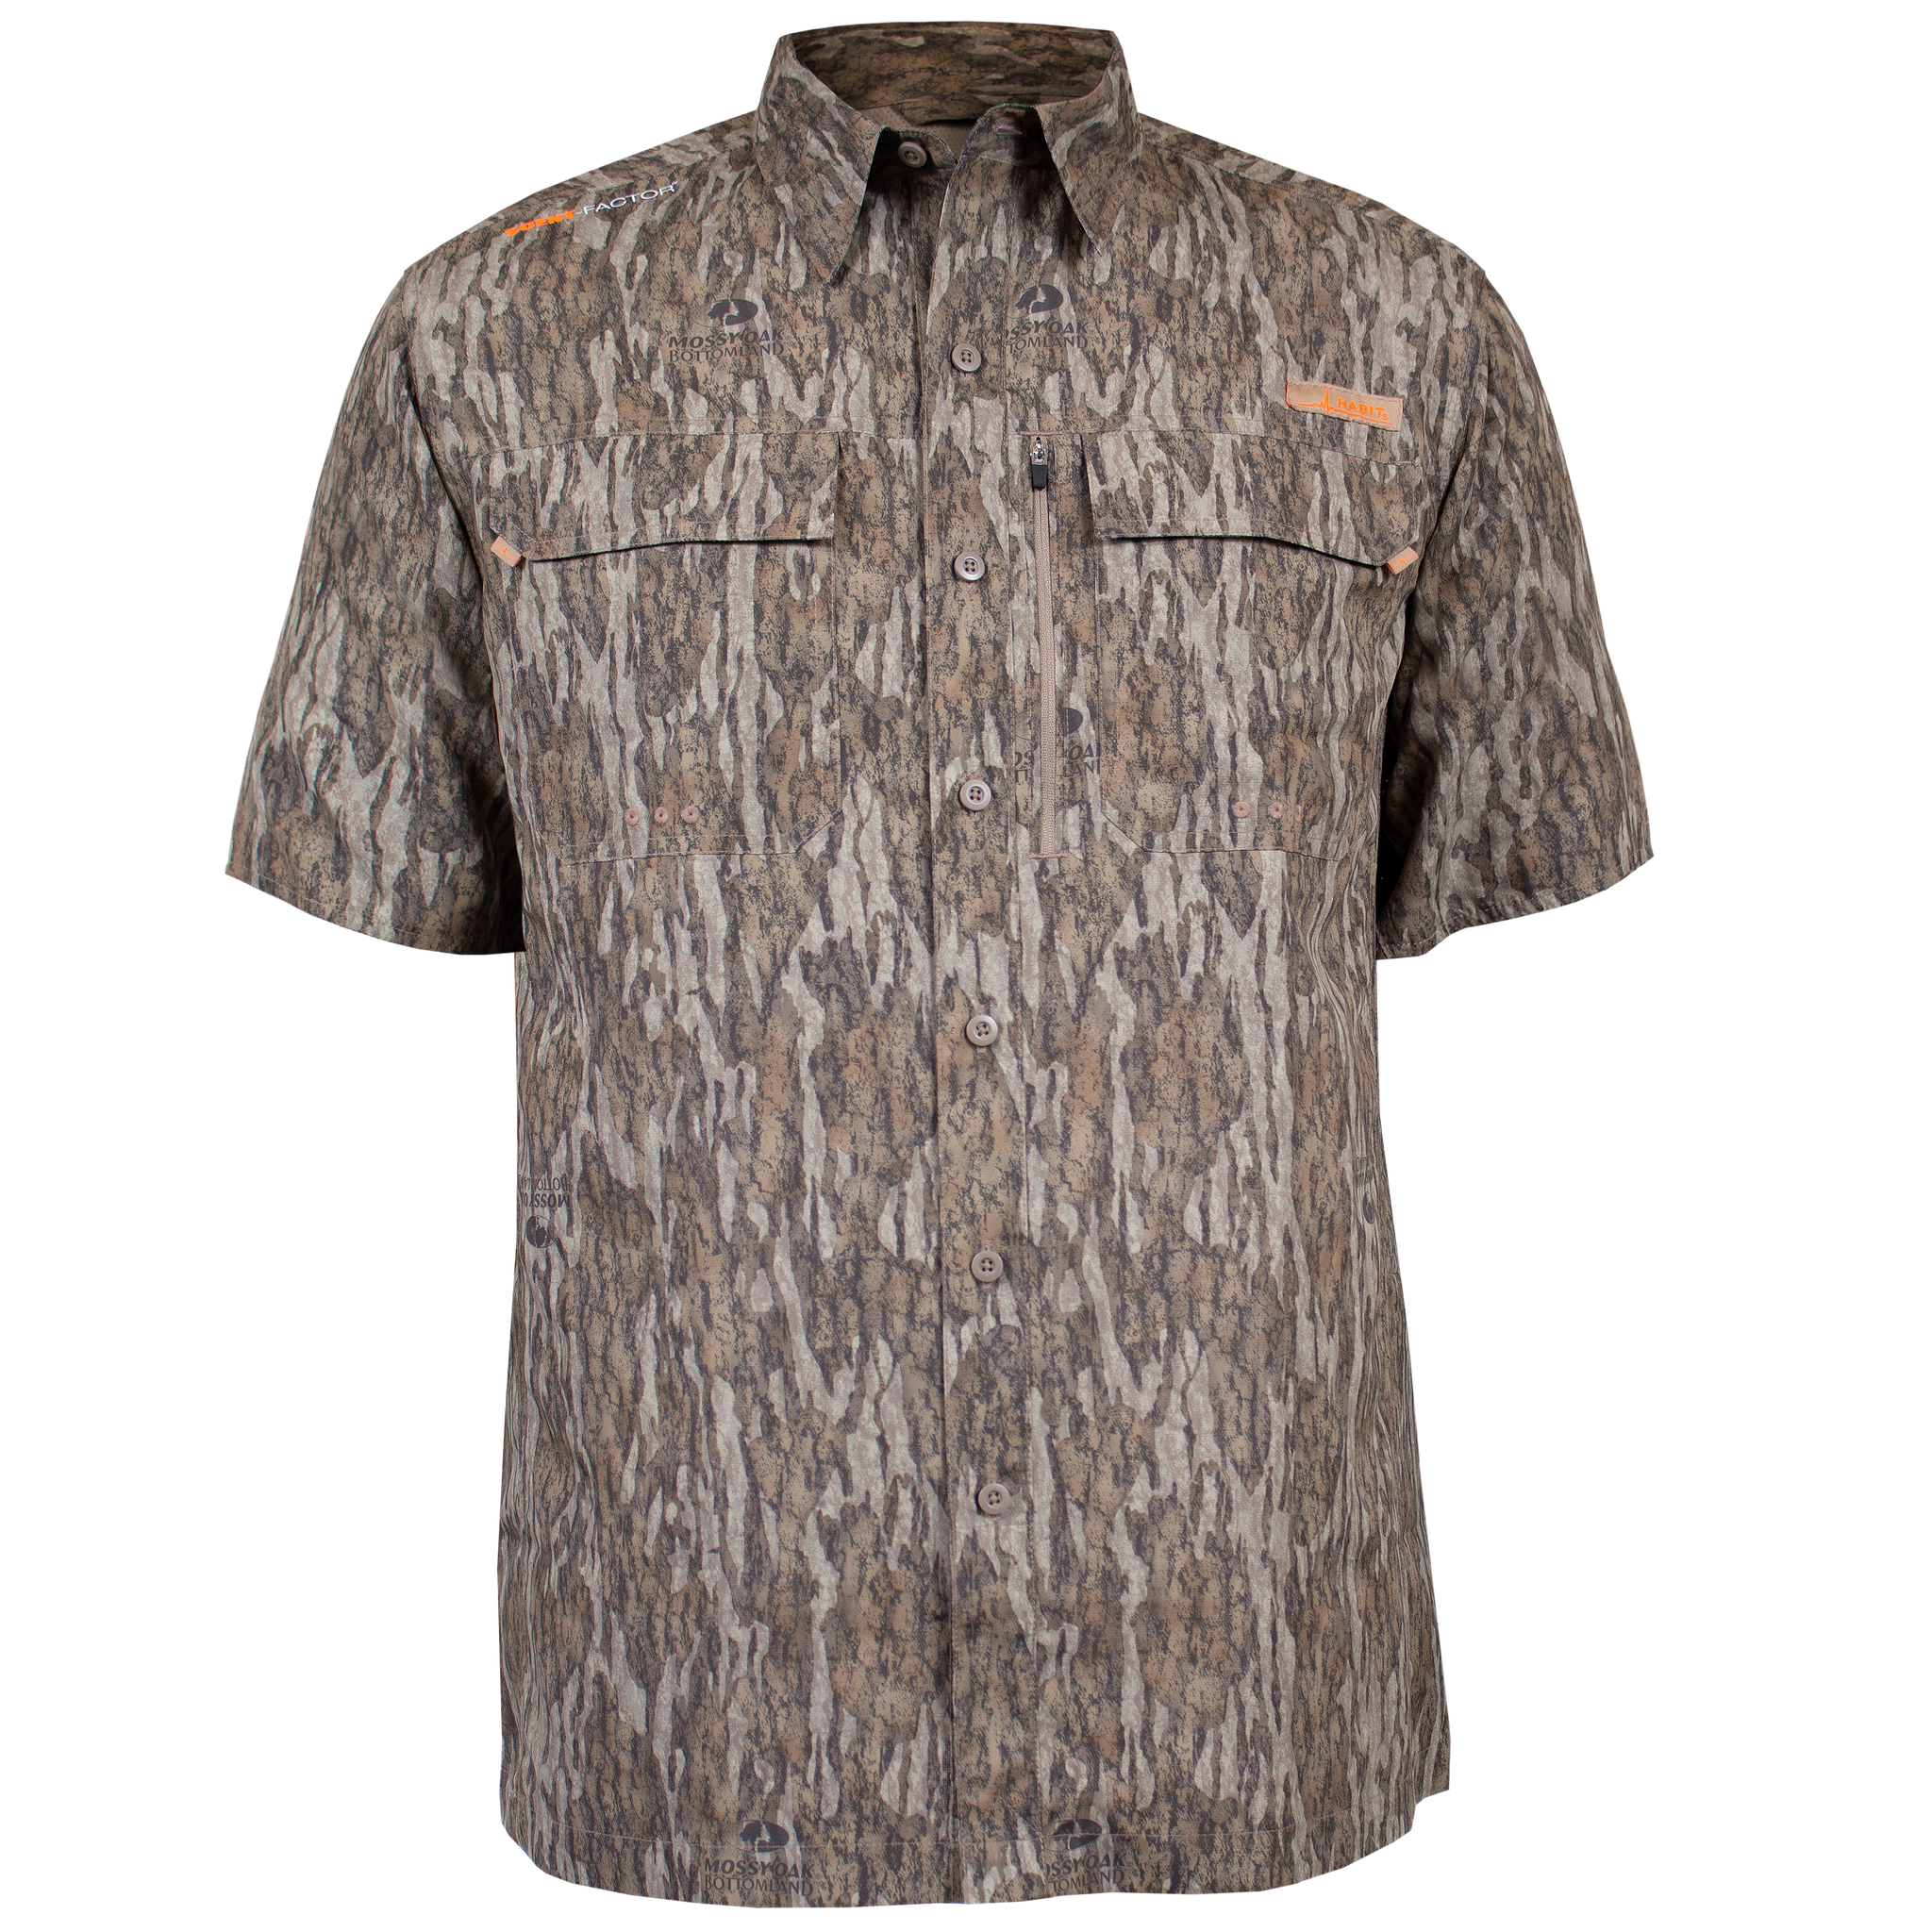 Men's Hatcher Pass Long Sleeve Camo Guide Shirt - Mossy Oak